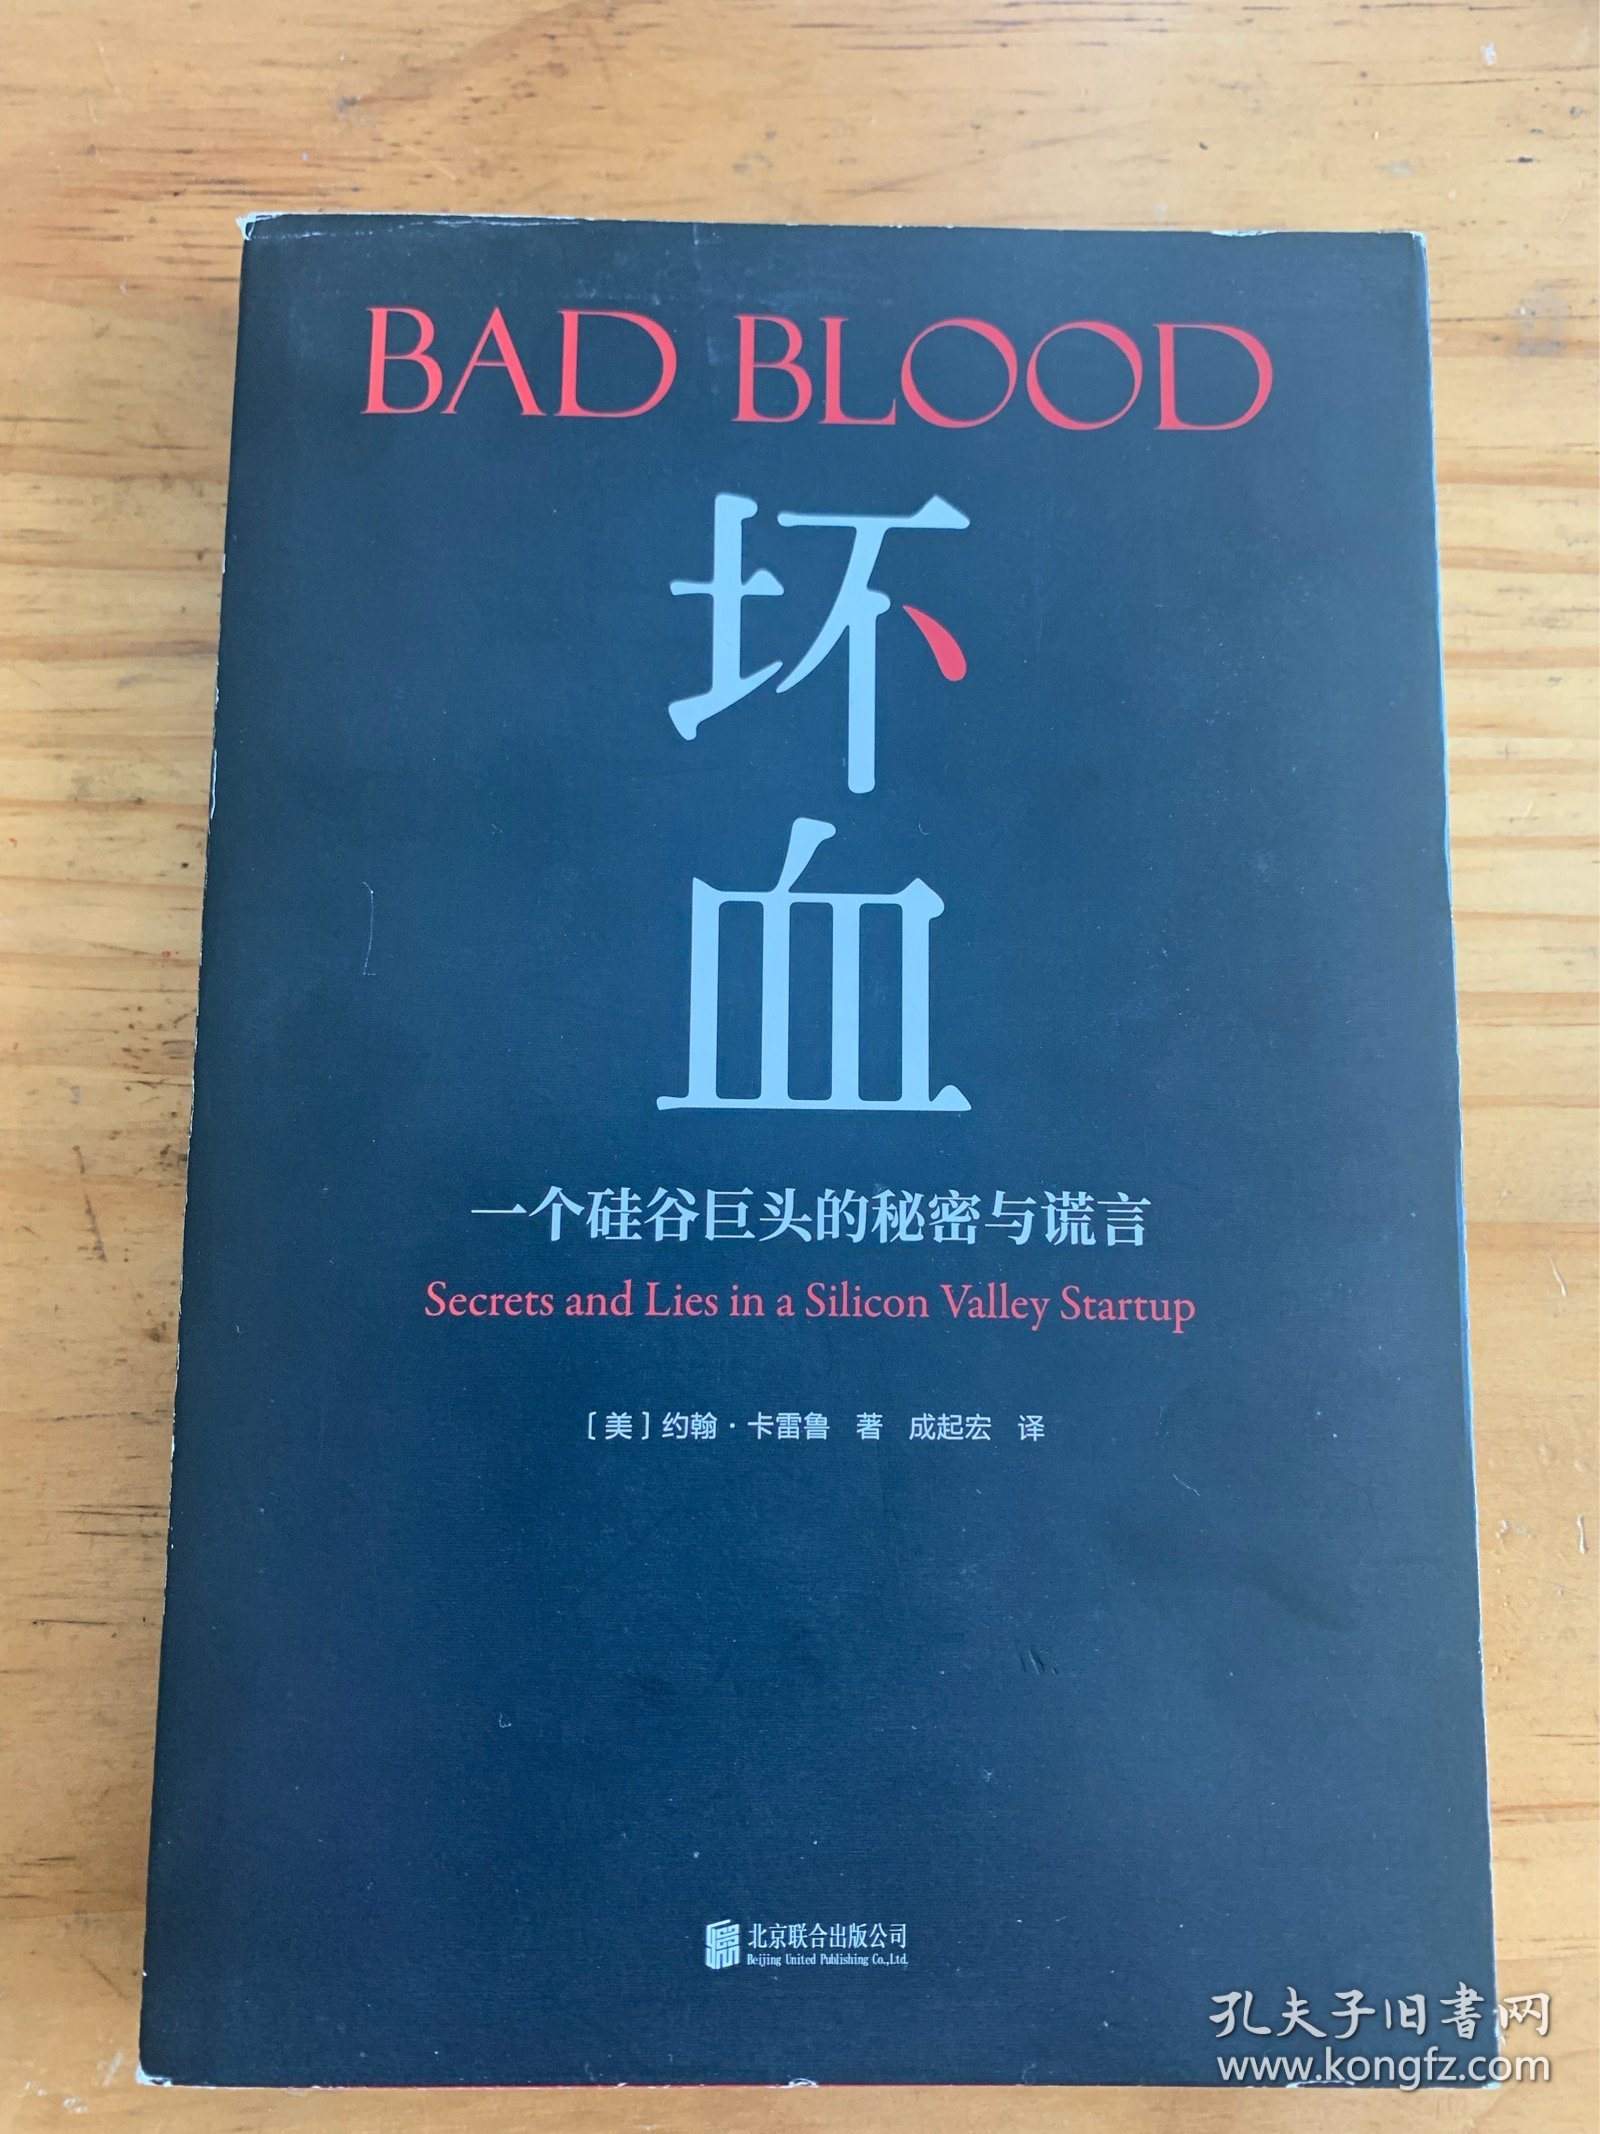 Bad Blood 坏血：一个硅谷巨头的秘密和谎言